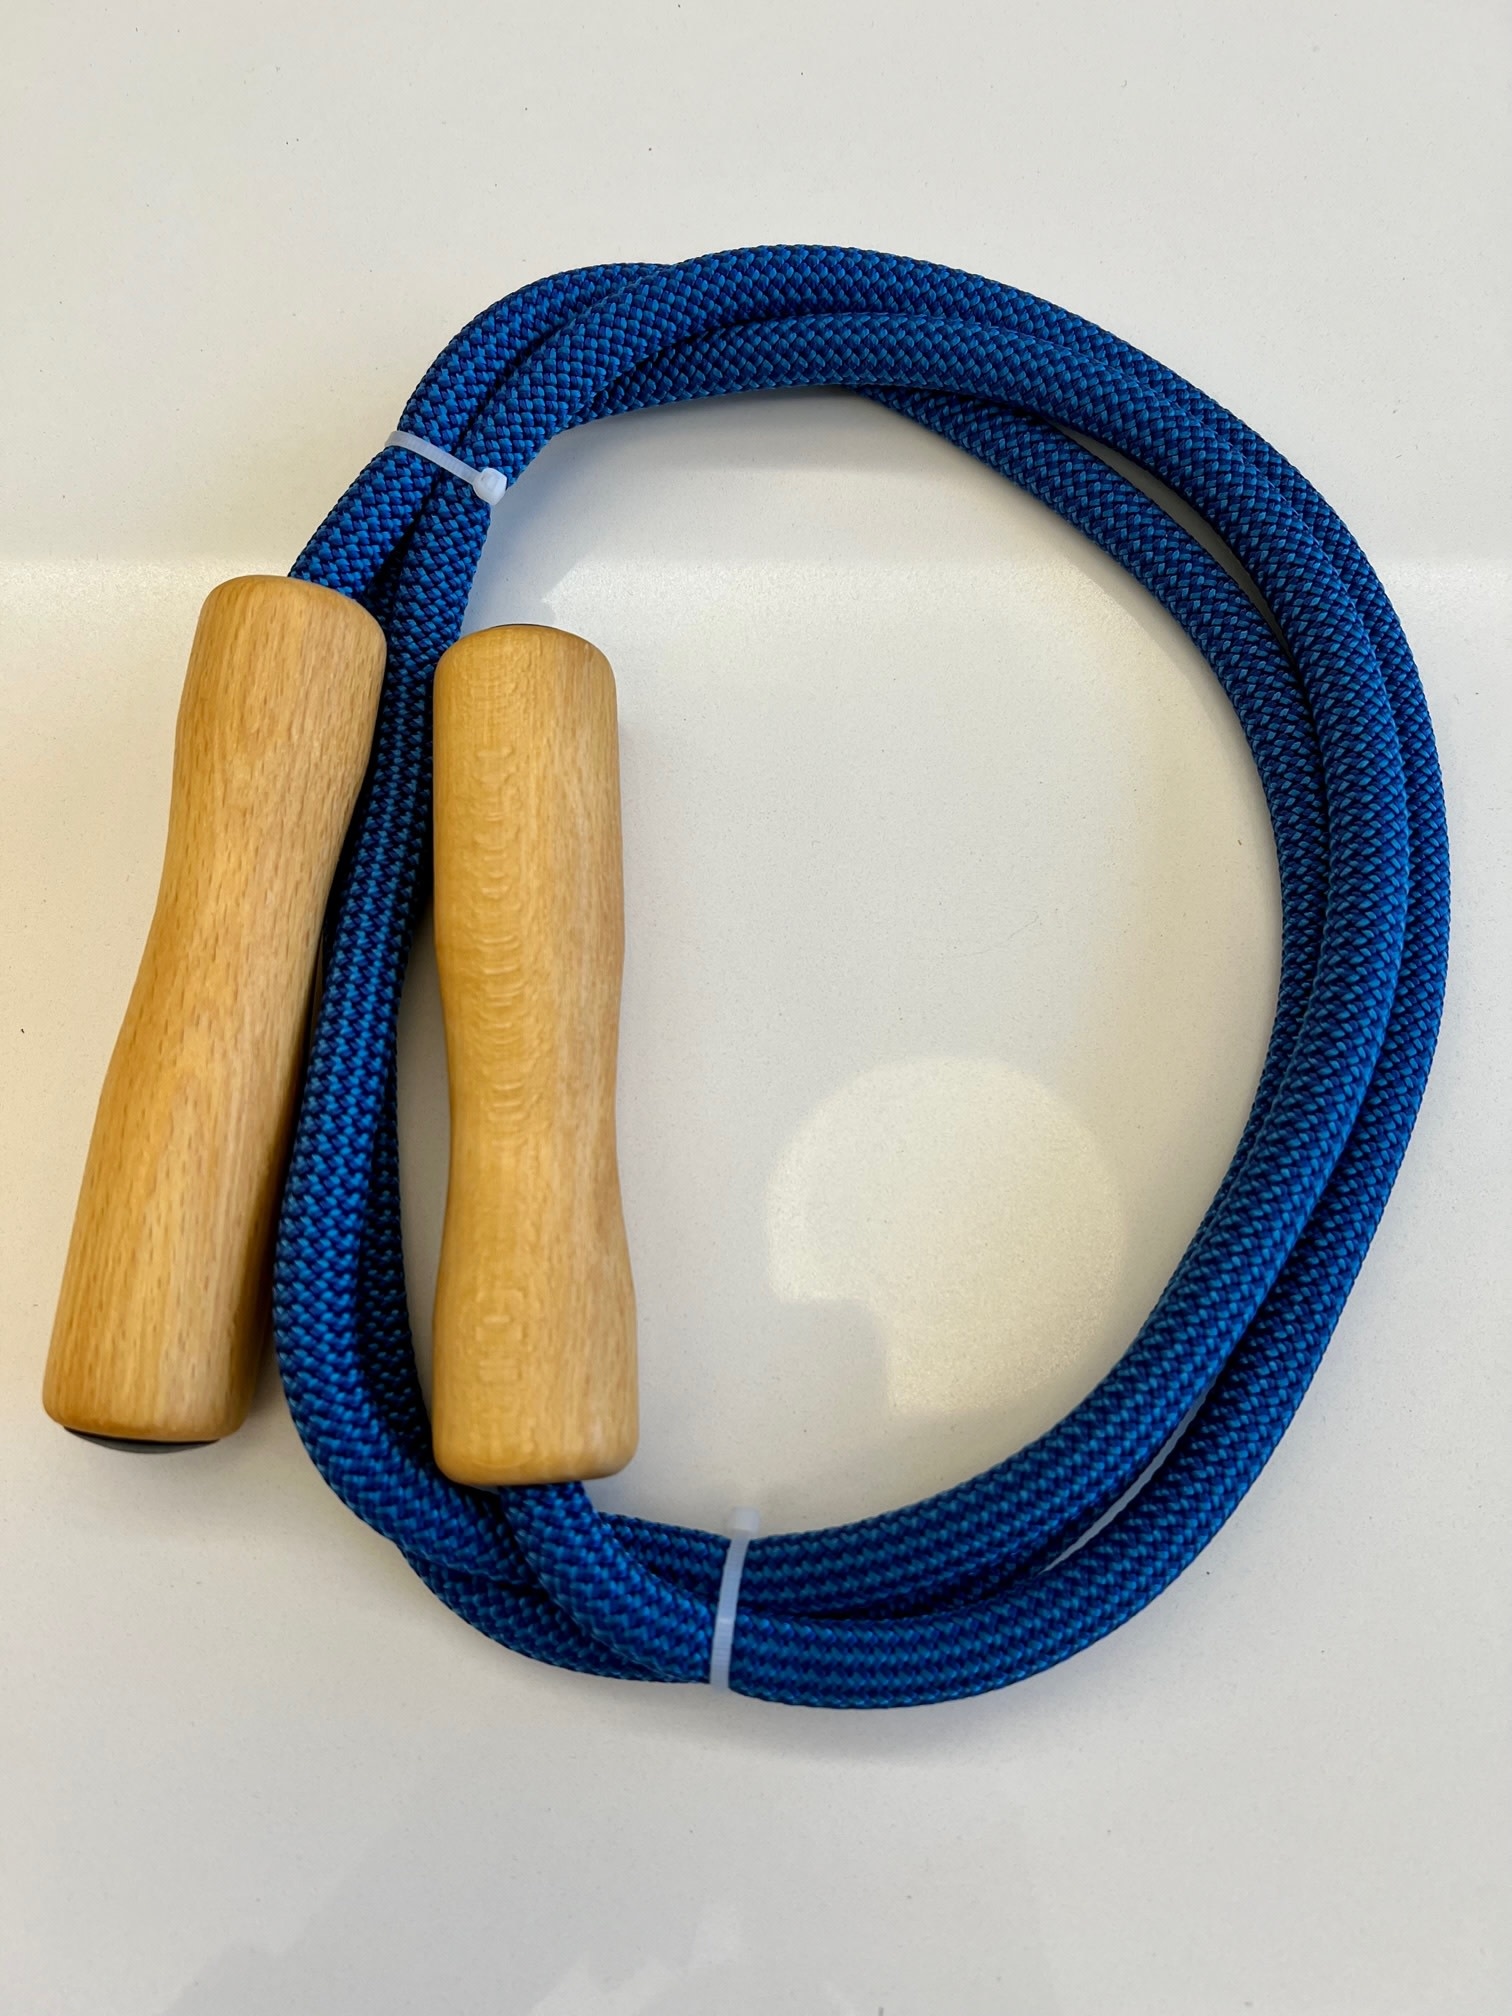 Mercurius Skipping rope medium 198 cm (78”) - For body height 115-135 cm (45-53 inch)